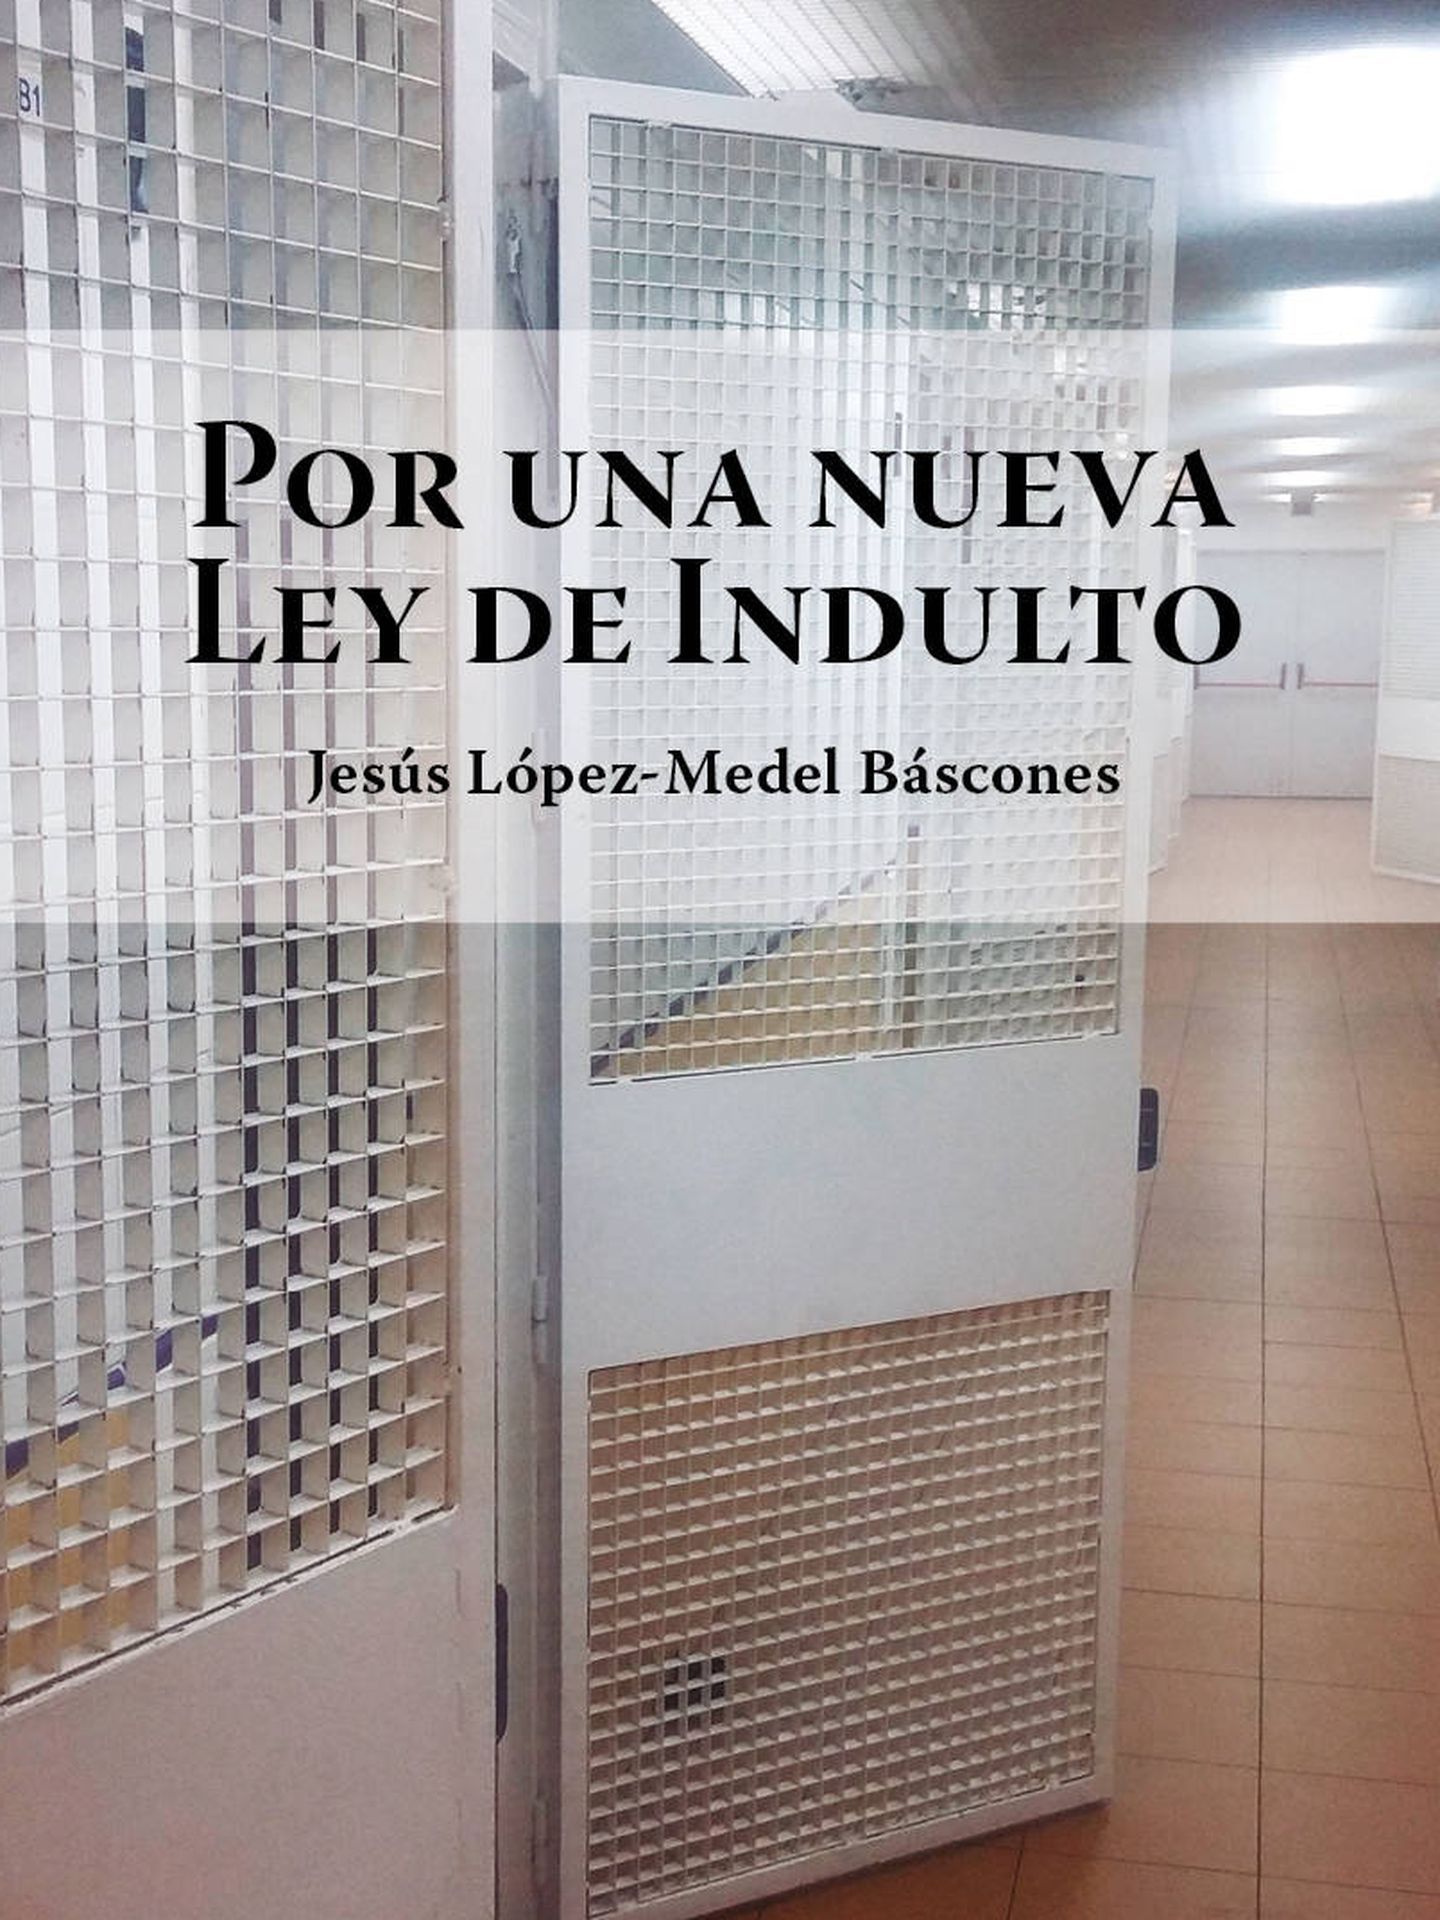 El libro de López-Medel.